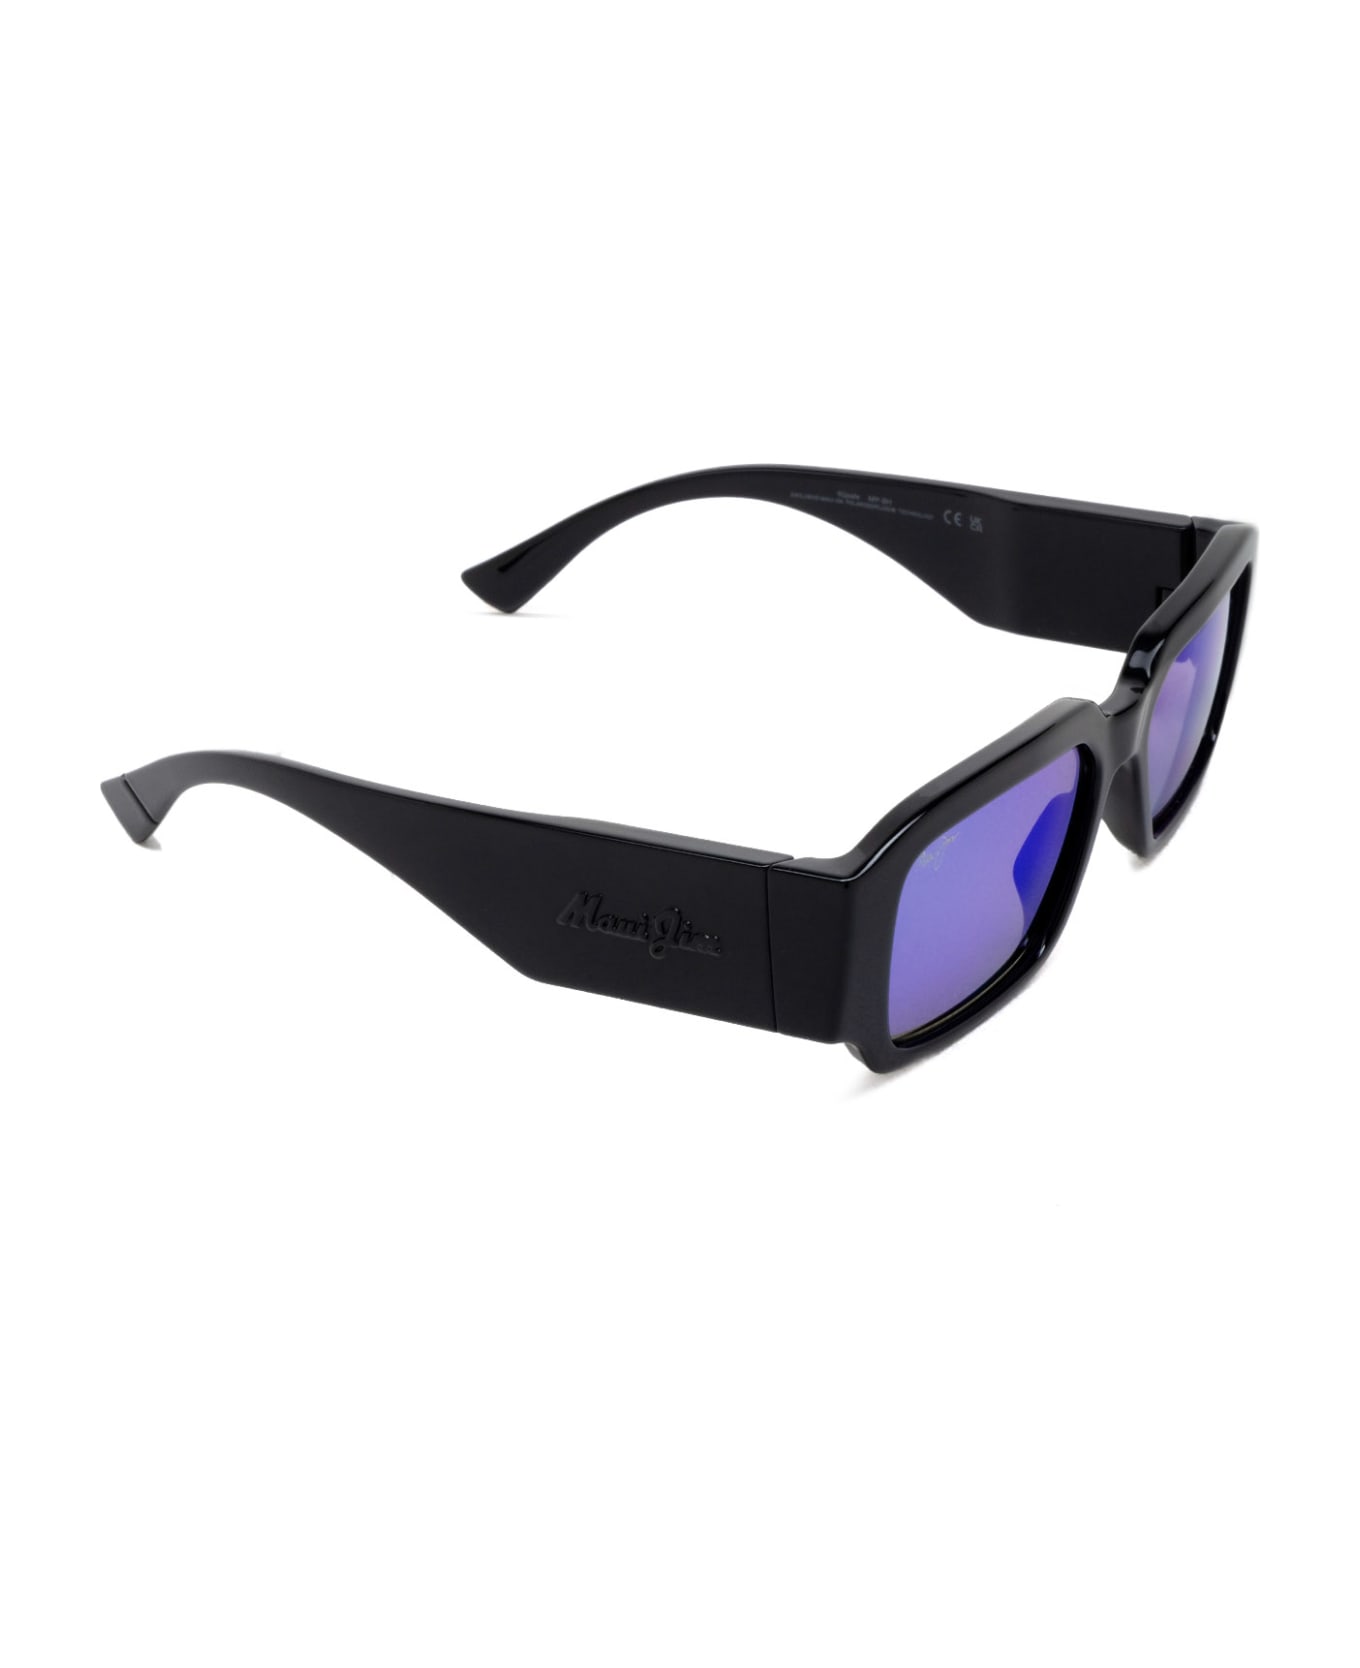 Maui Jim Mj639 Shiny Black Sunglasses - Shiny Black サングラス